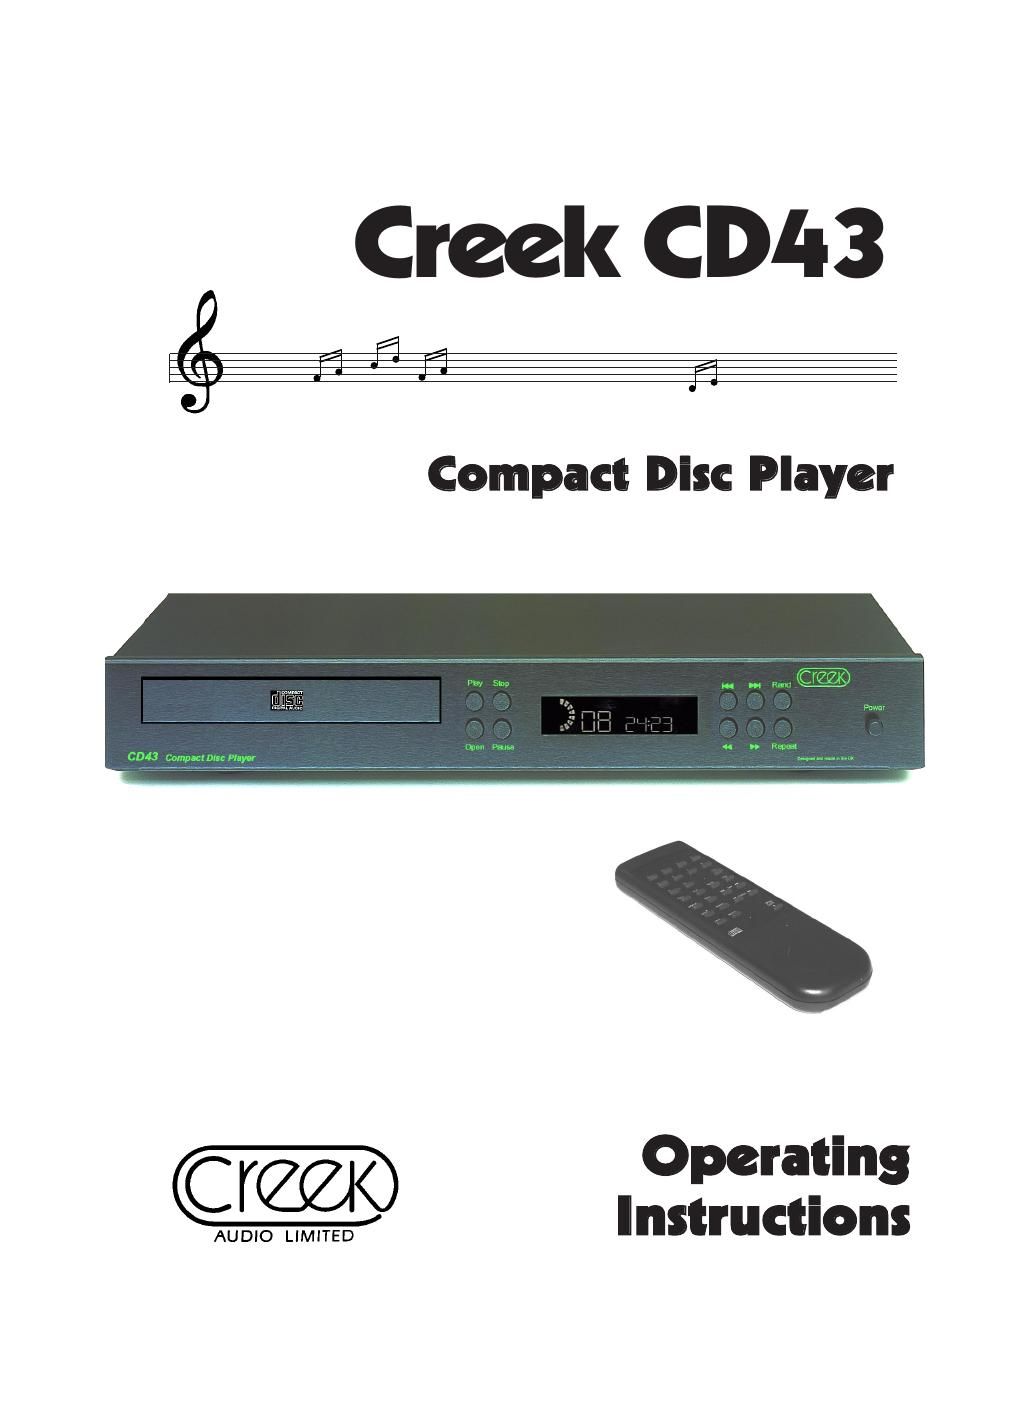 creek cd 43 owners manual